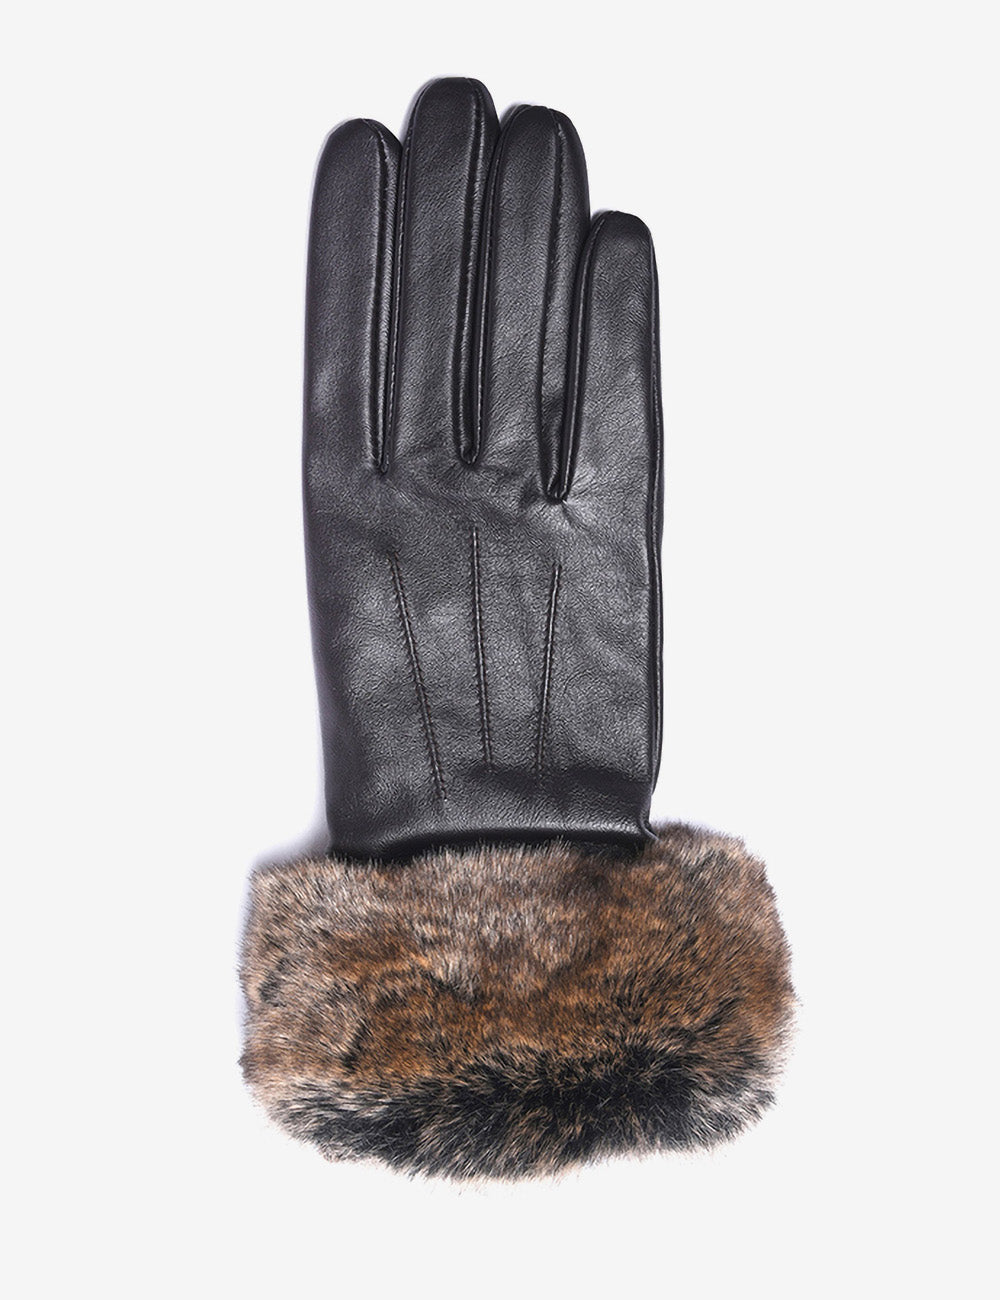 Barbour Fur Trimmed Leather Gloves - Dark Brown